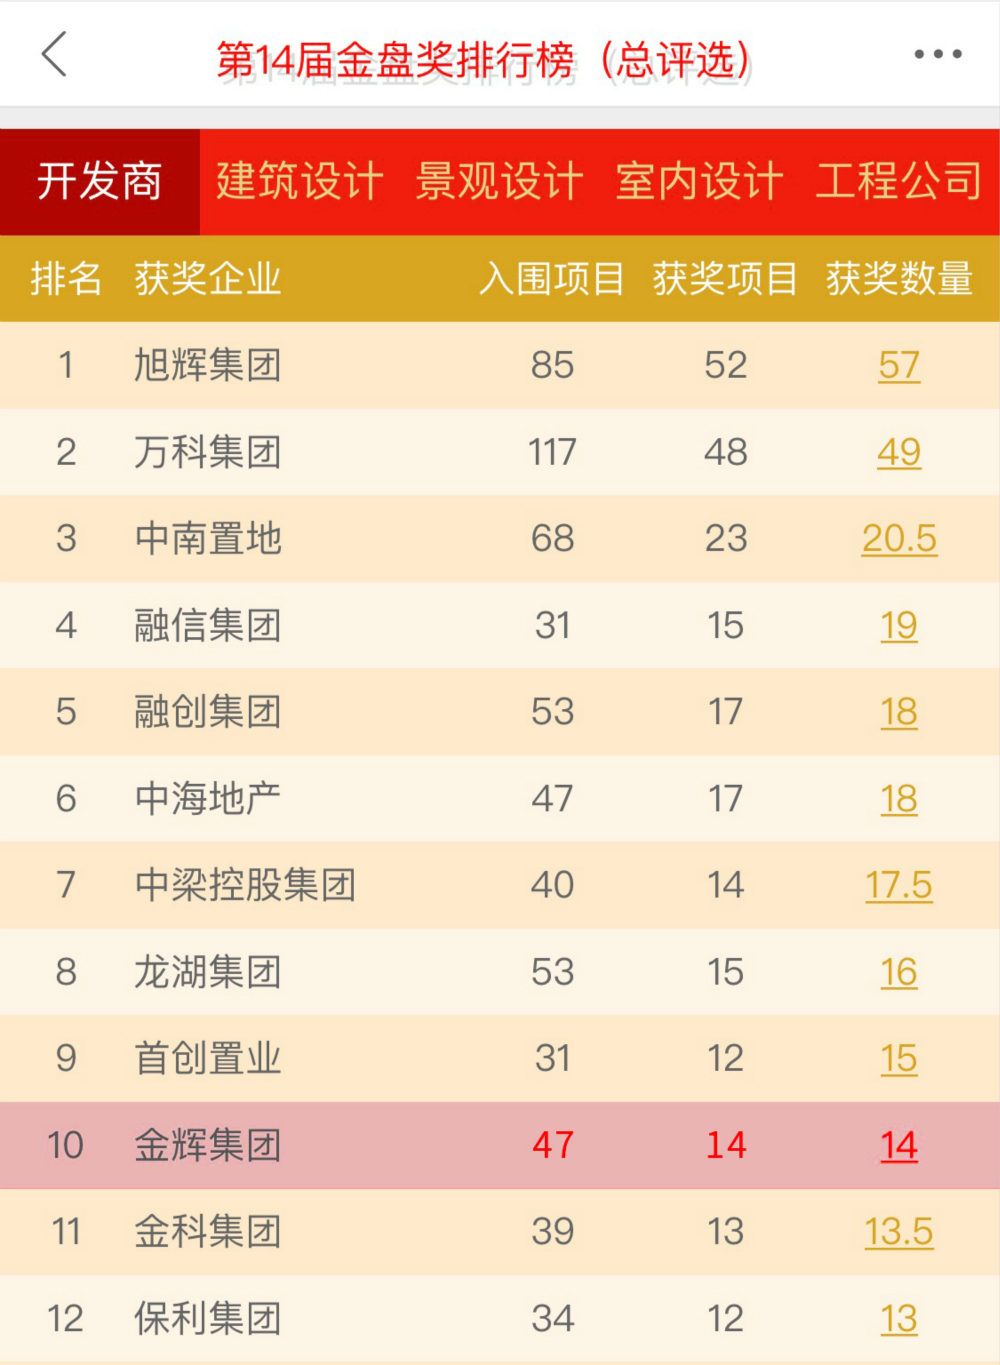 金辉集团跻身第14届金盘排行榜（总评选）TOP 10